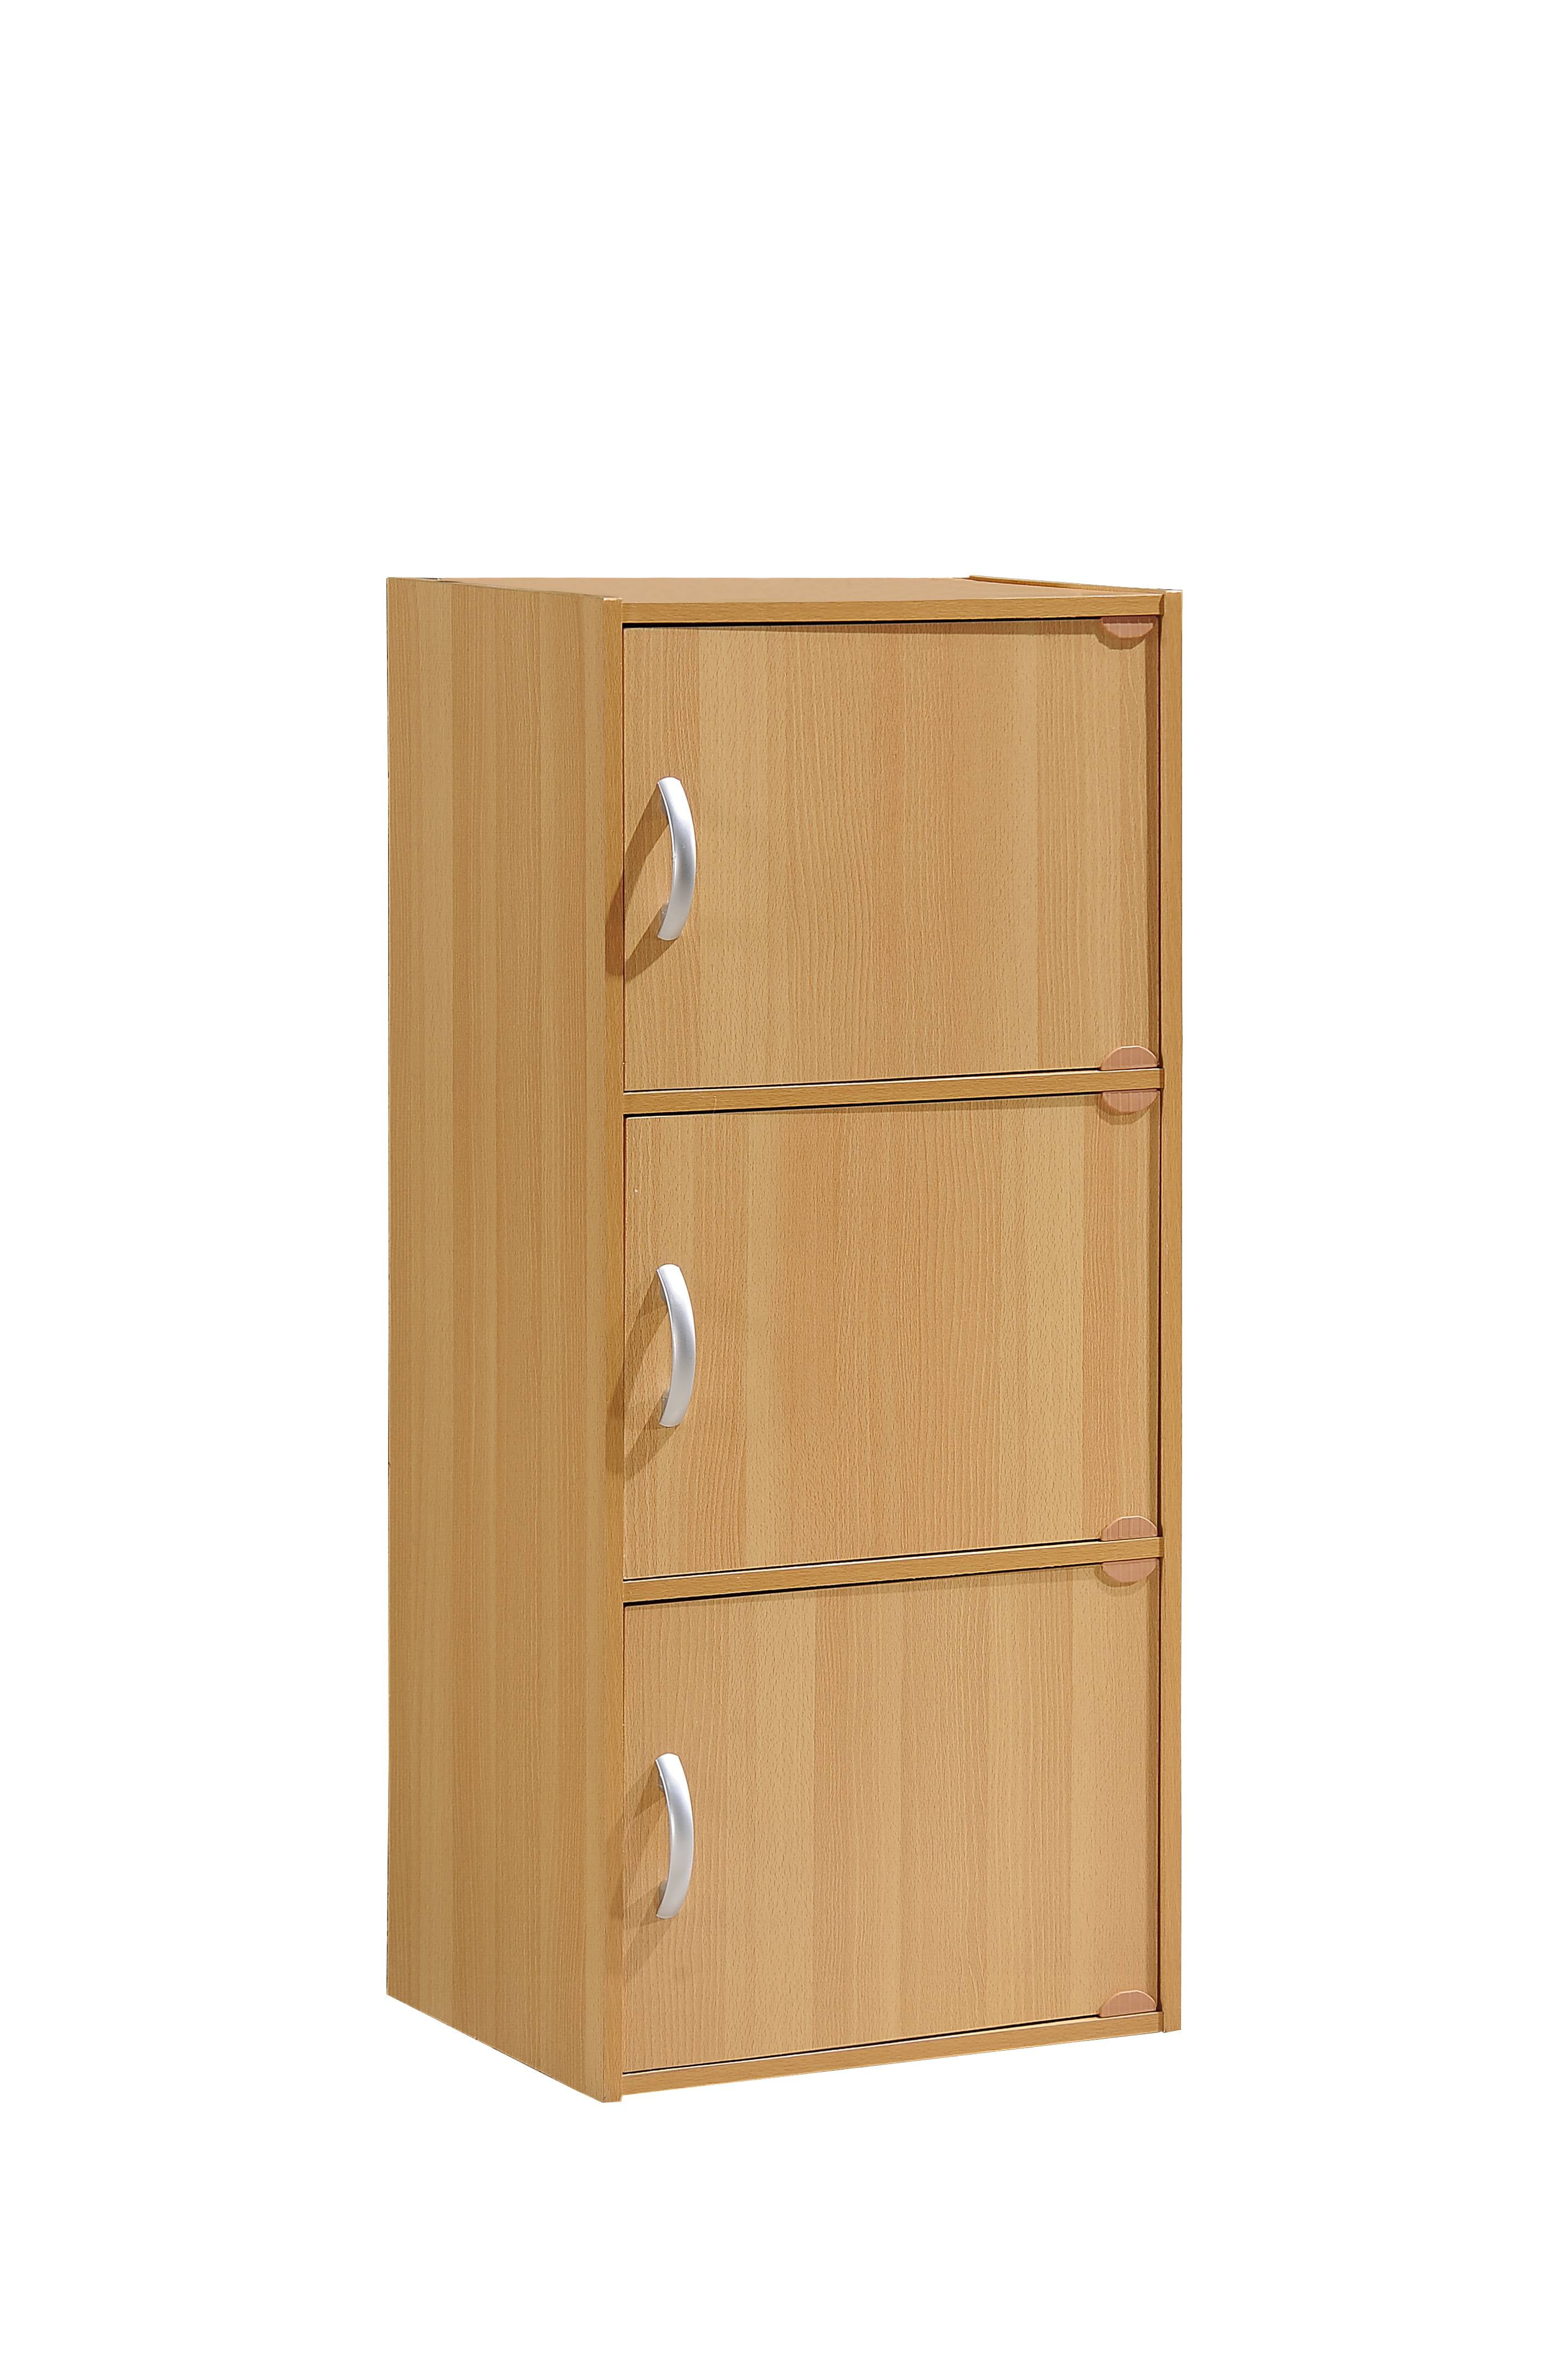 Details about   3 Door Storage Cabinet Shelf Organizer Bookcase Pantry Cupboard Closet White 